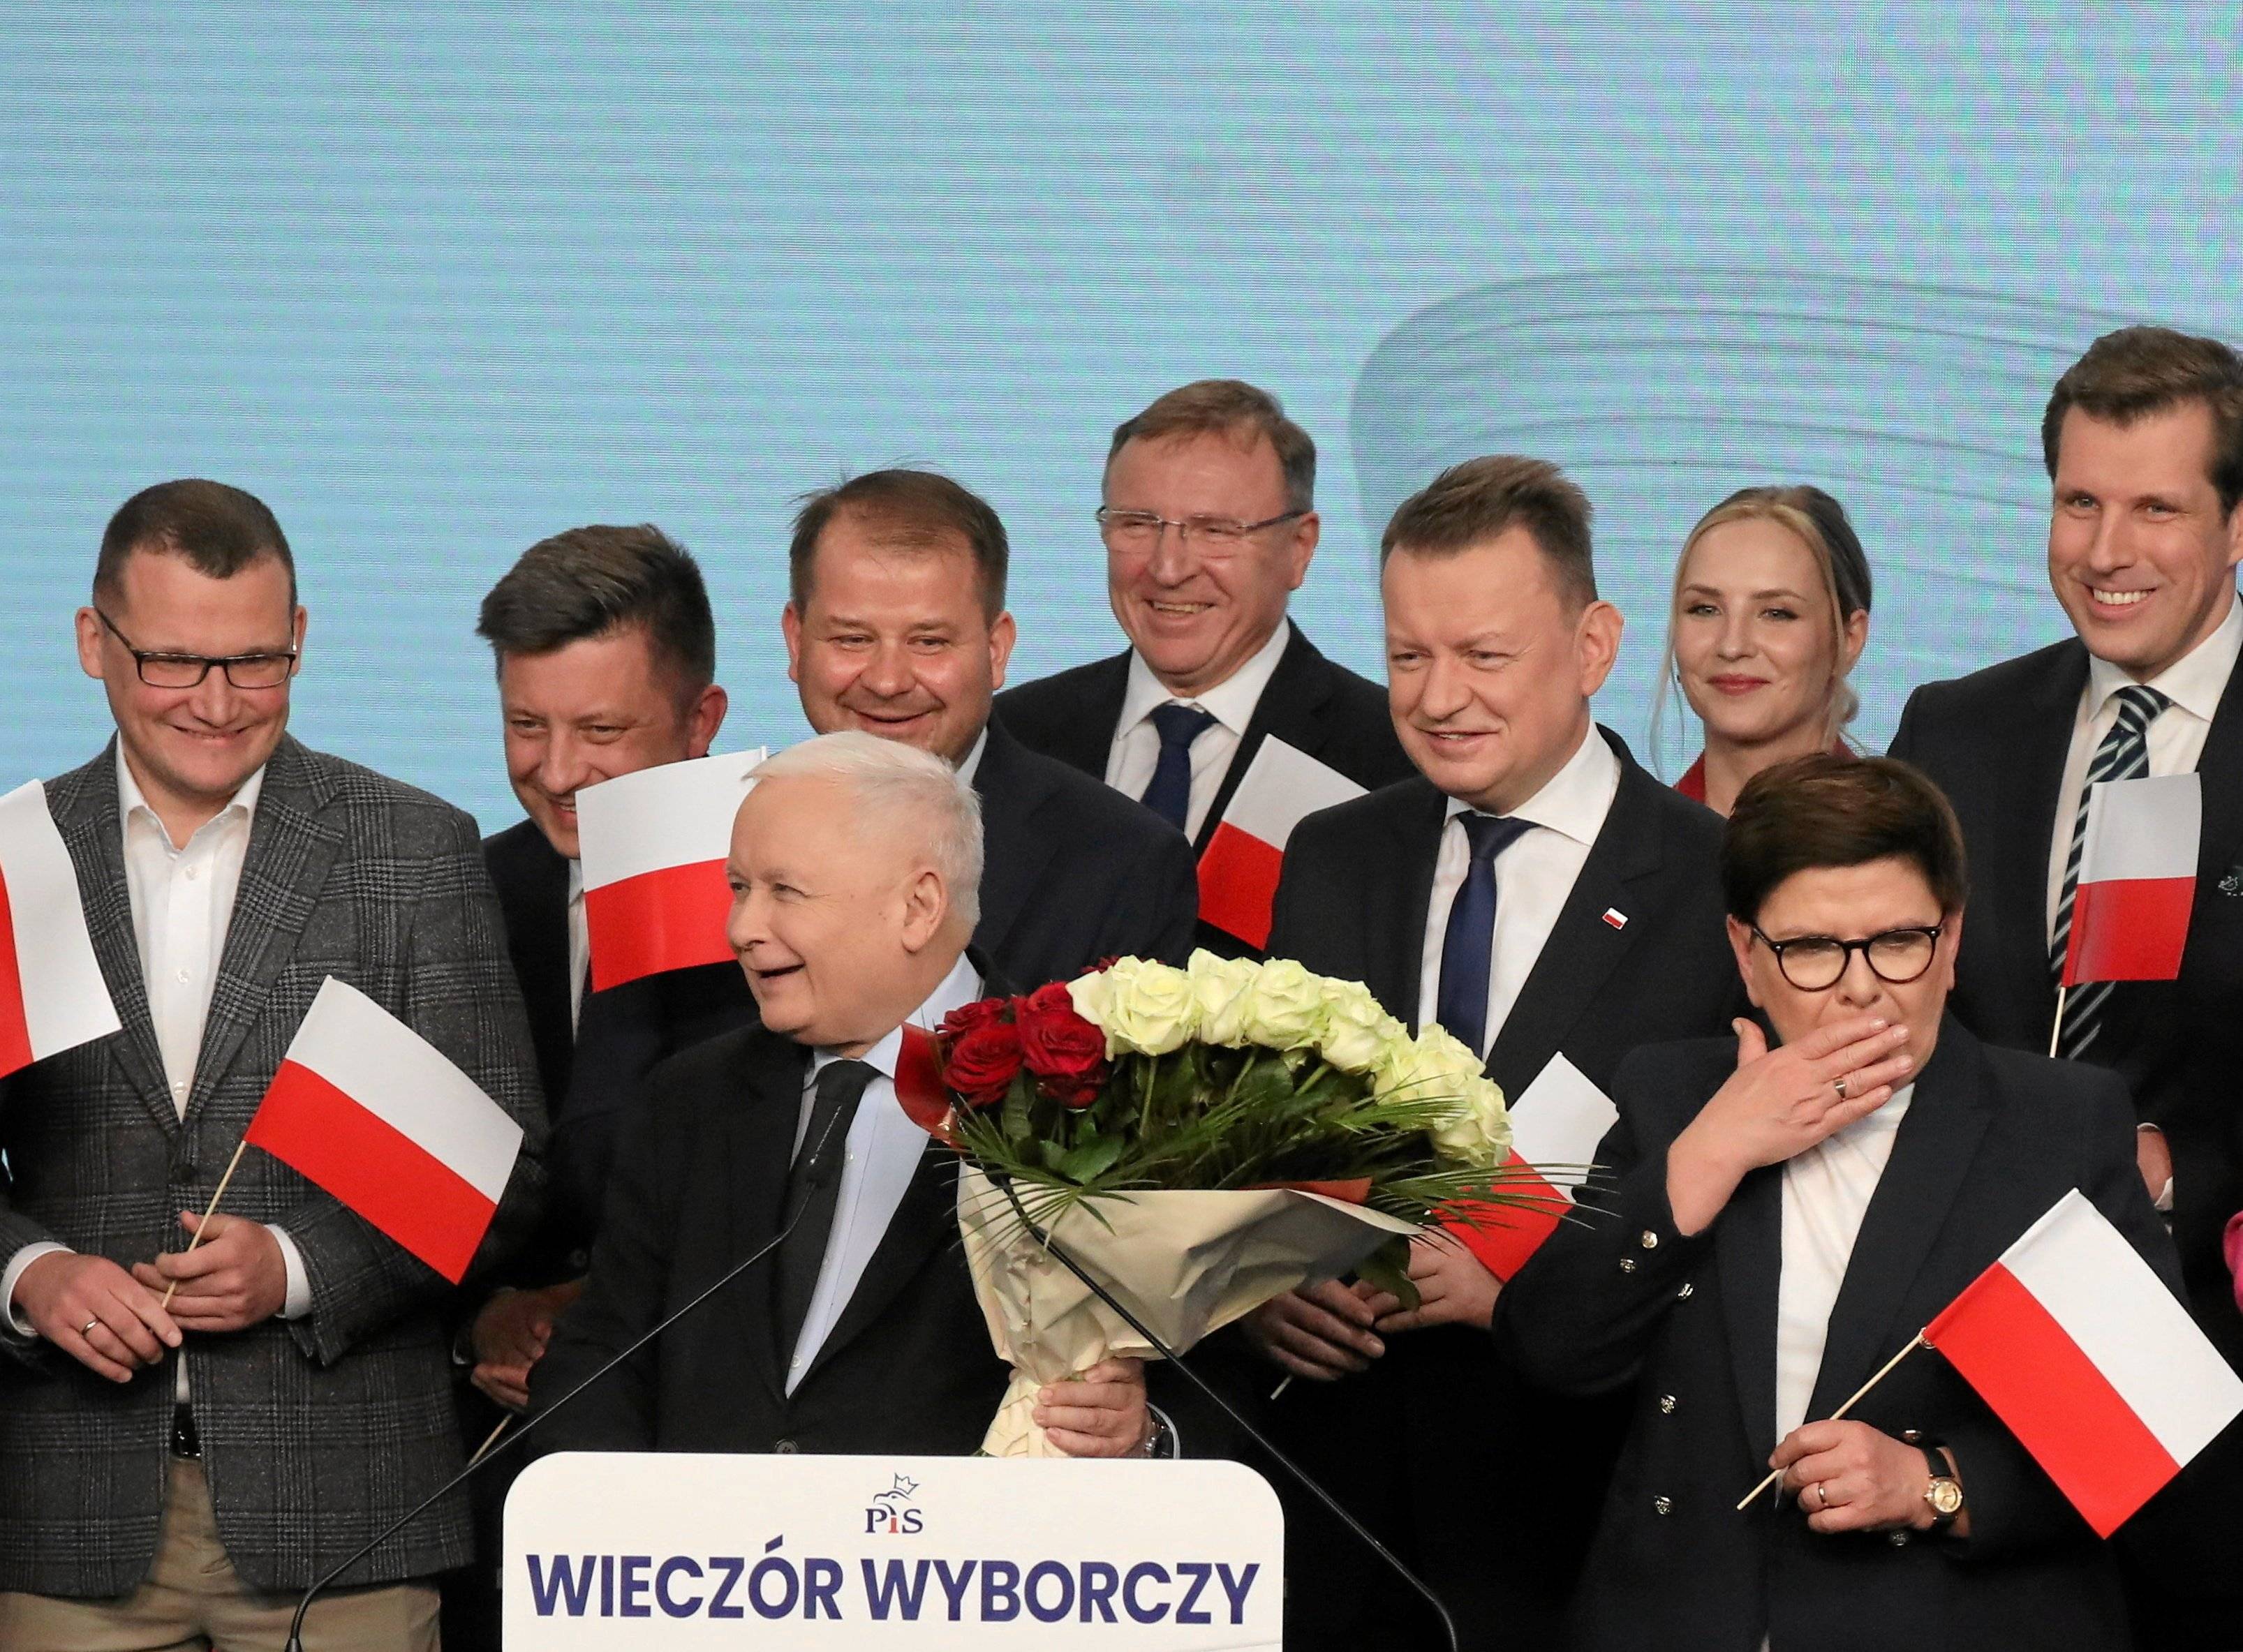 Rozradowany Jarosław Kaczyński - niski siwy starszy pan - w otoczeiu mężczyzn z biało-czerwonymi flagami, z biało-czerwonym bukietem w dłoni